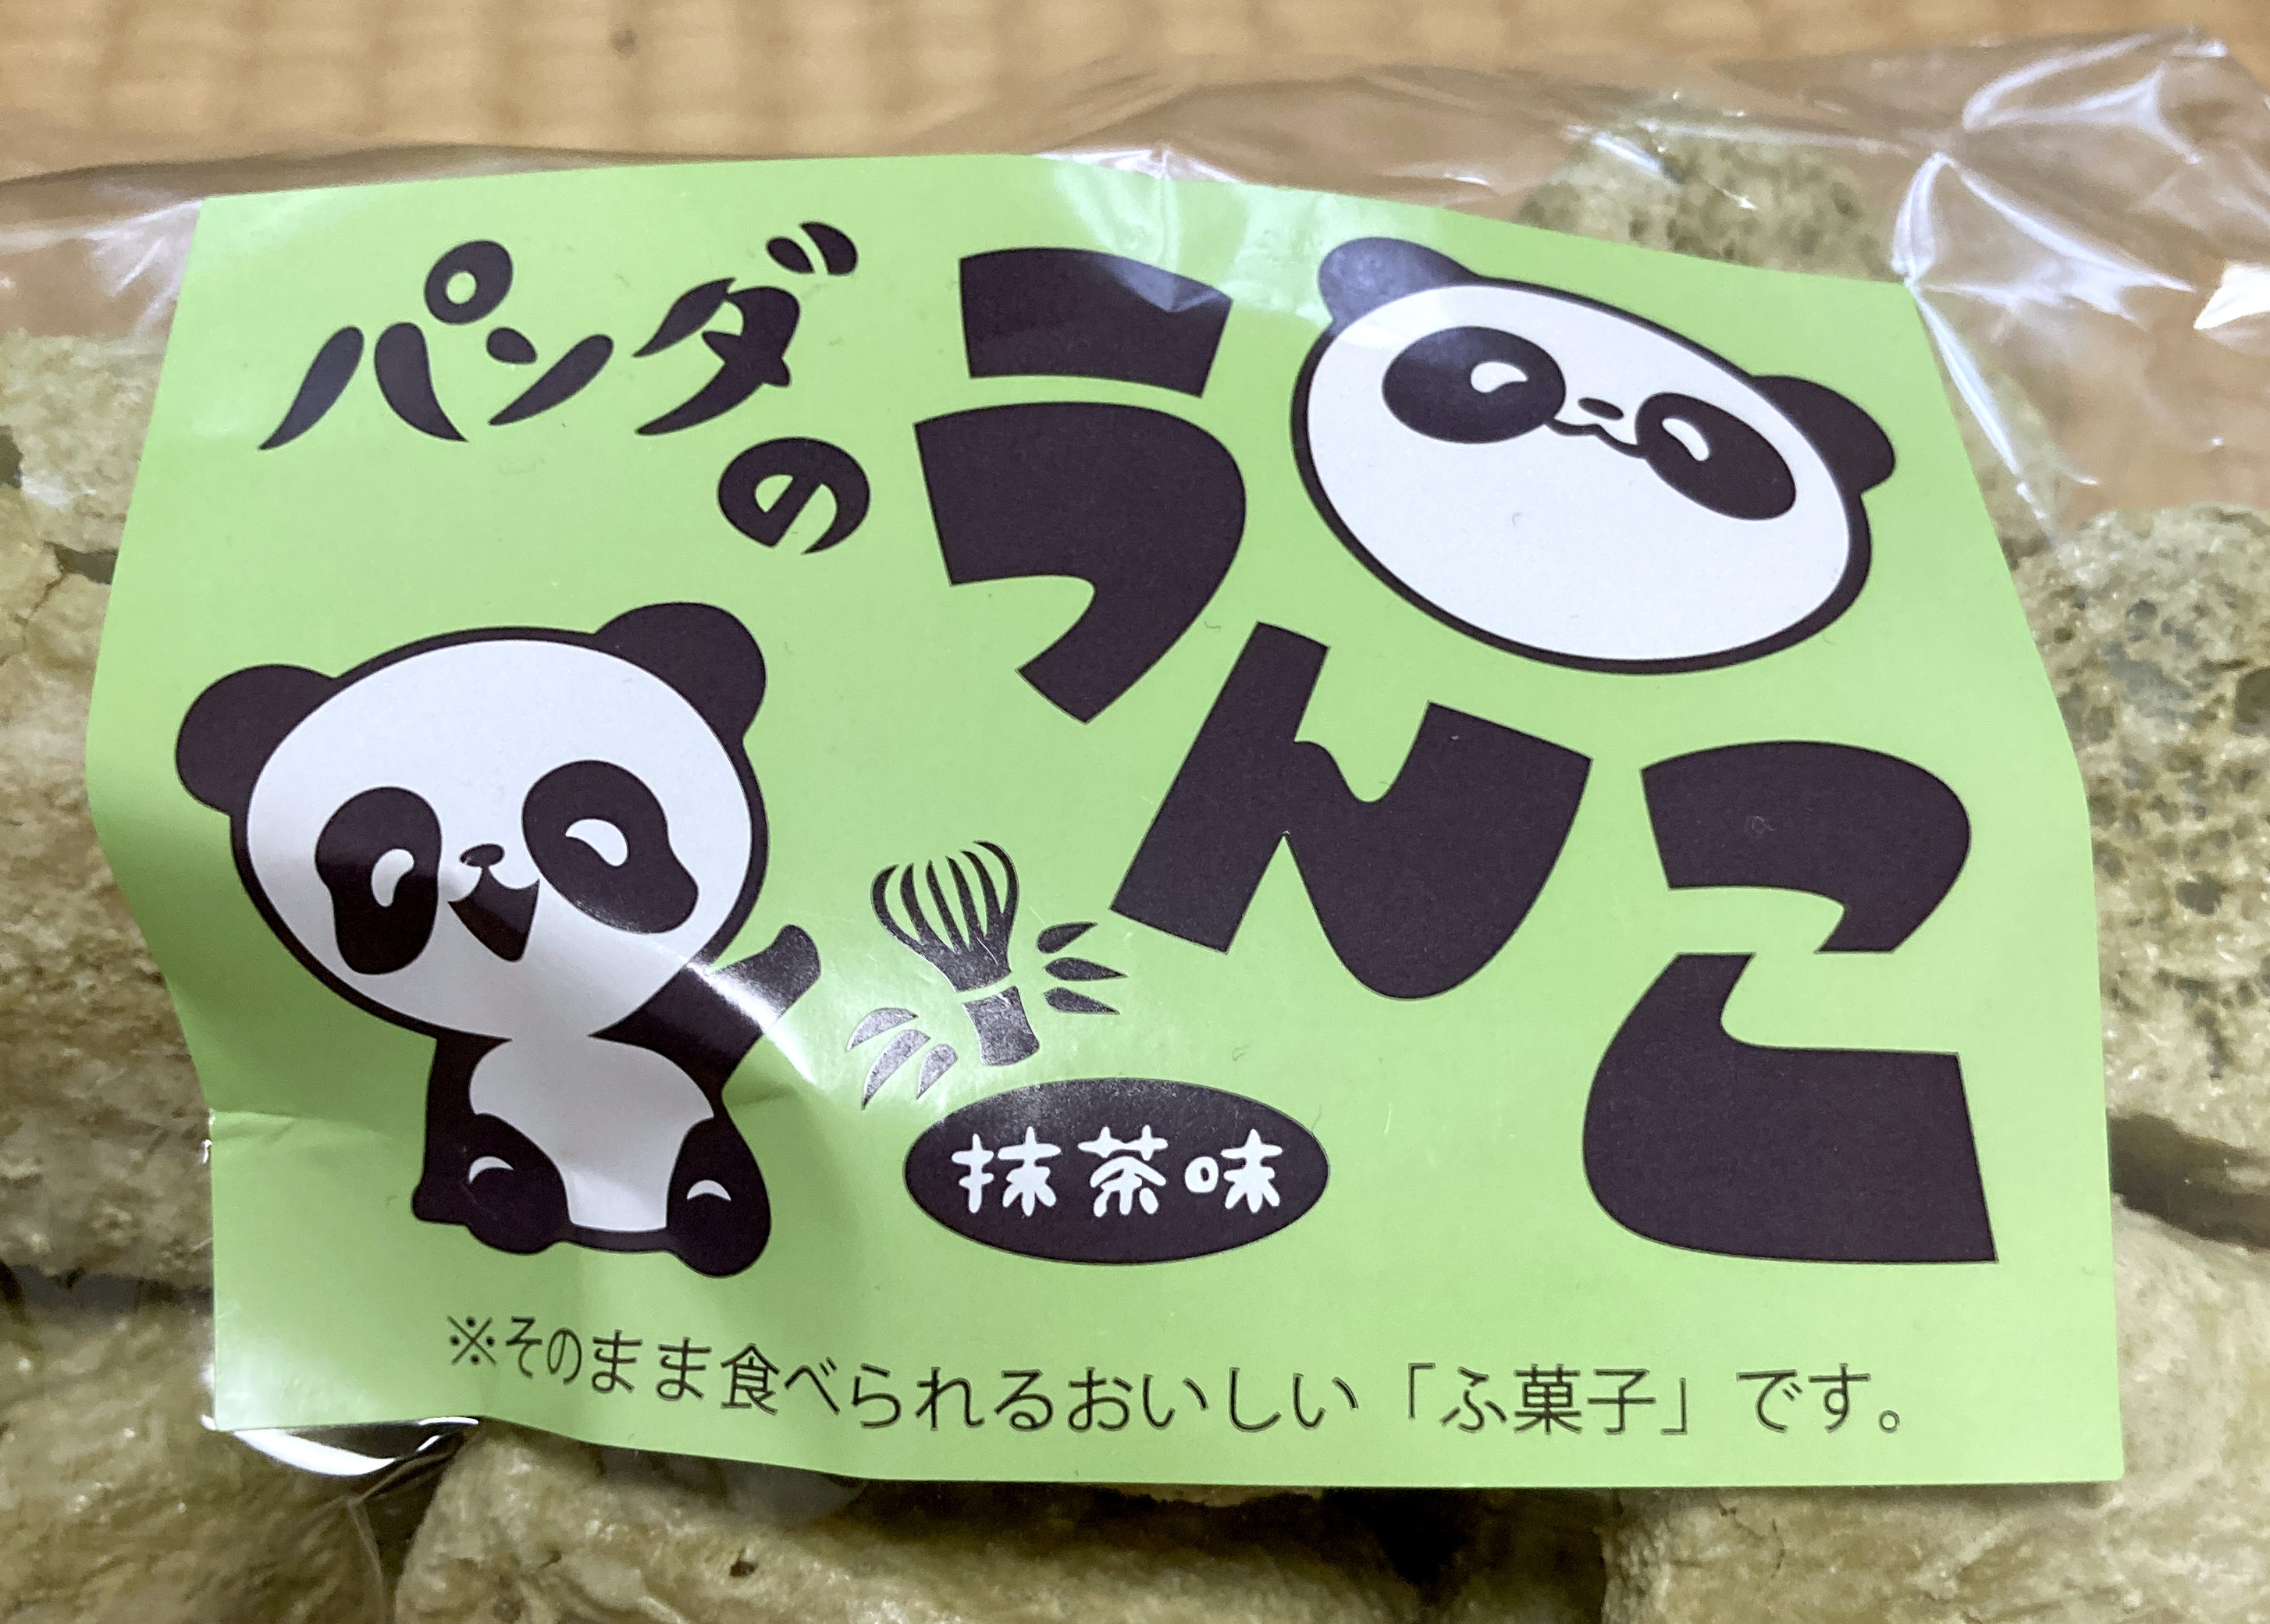 上野公園で売ってた パンダのうんこ を買ってみた 売り場の商品説明を読んだら仰天したよッ ロケットニュース24